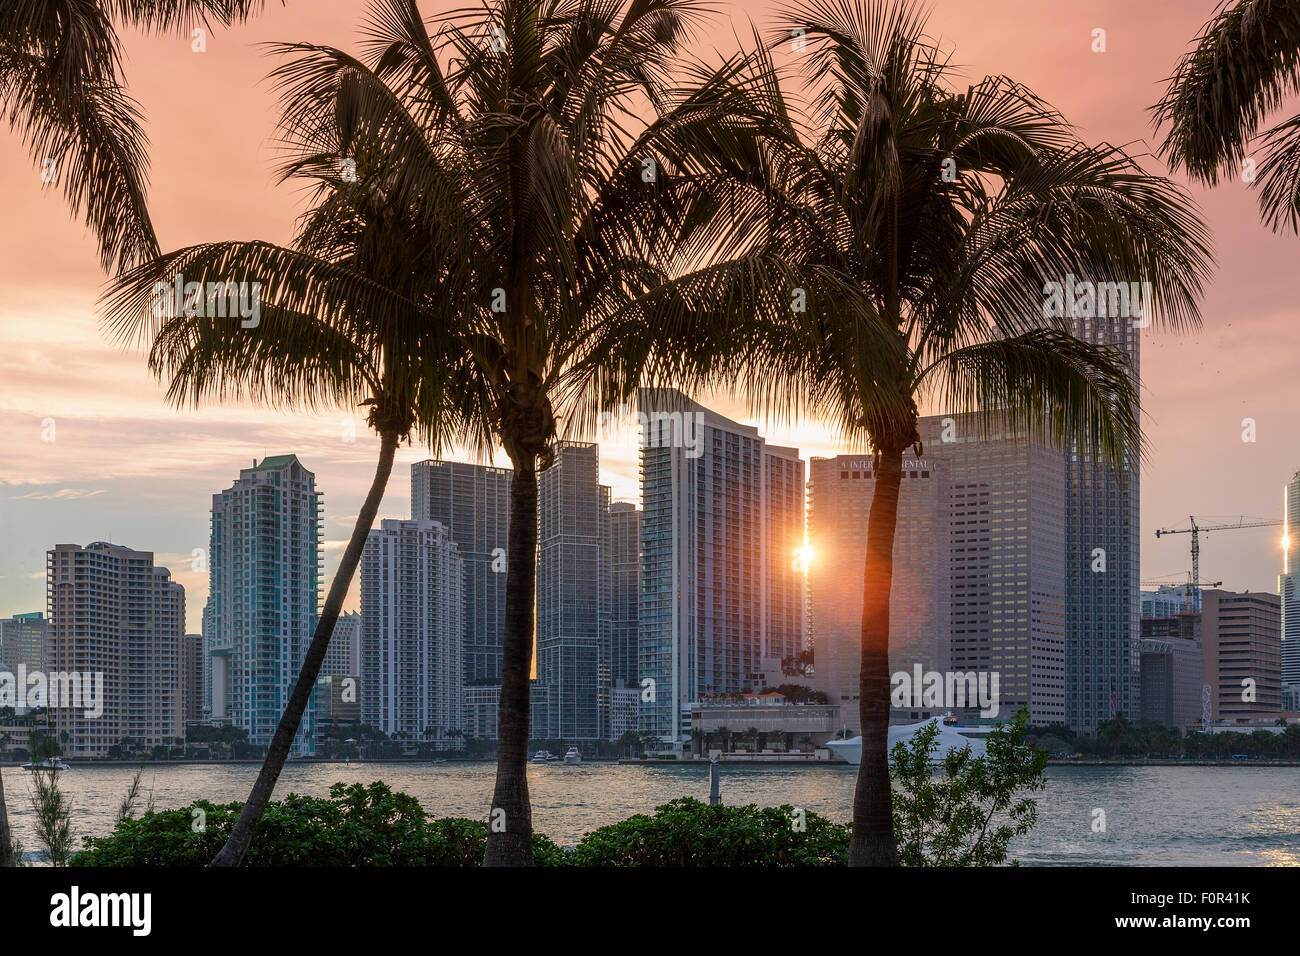 La ciudad de Miami, Florida al atardecer Foto de stock